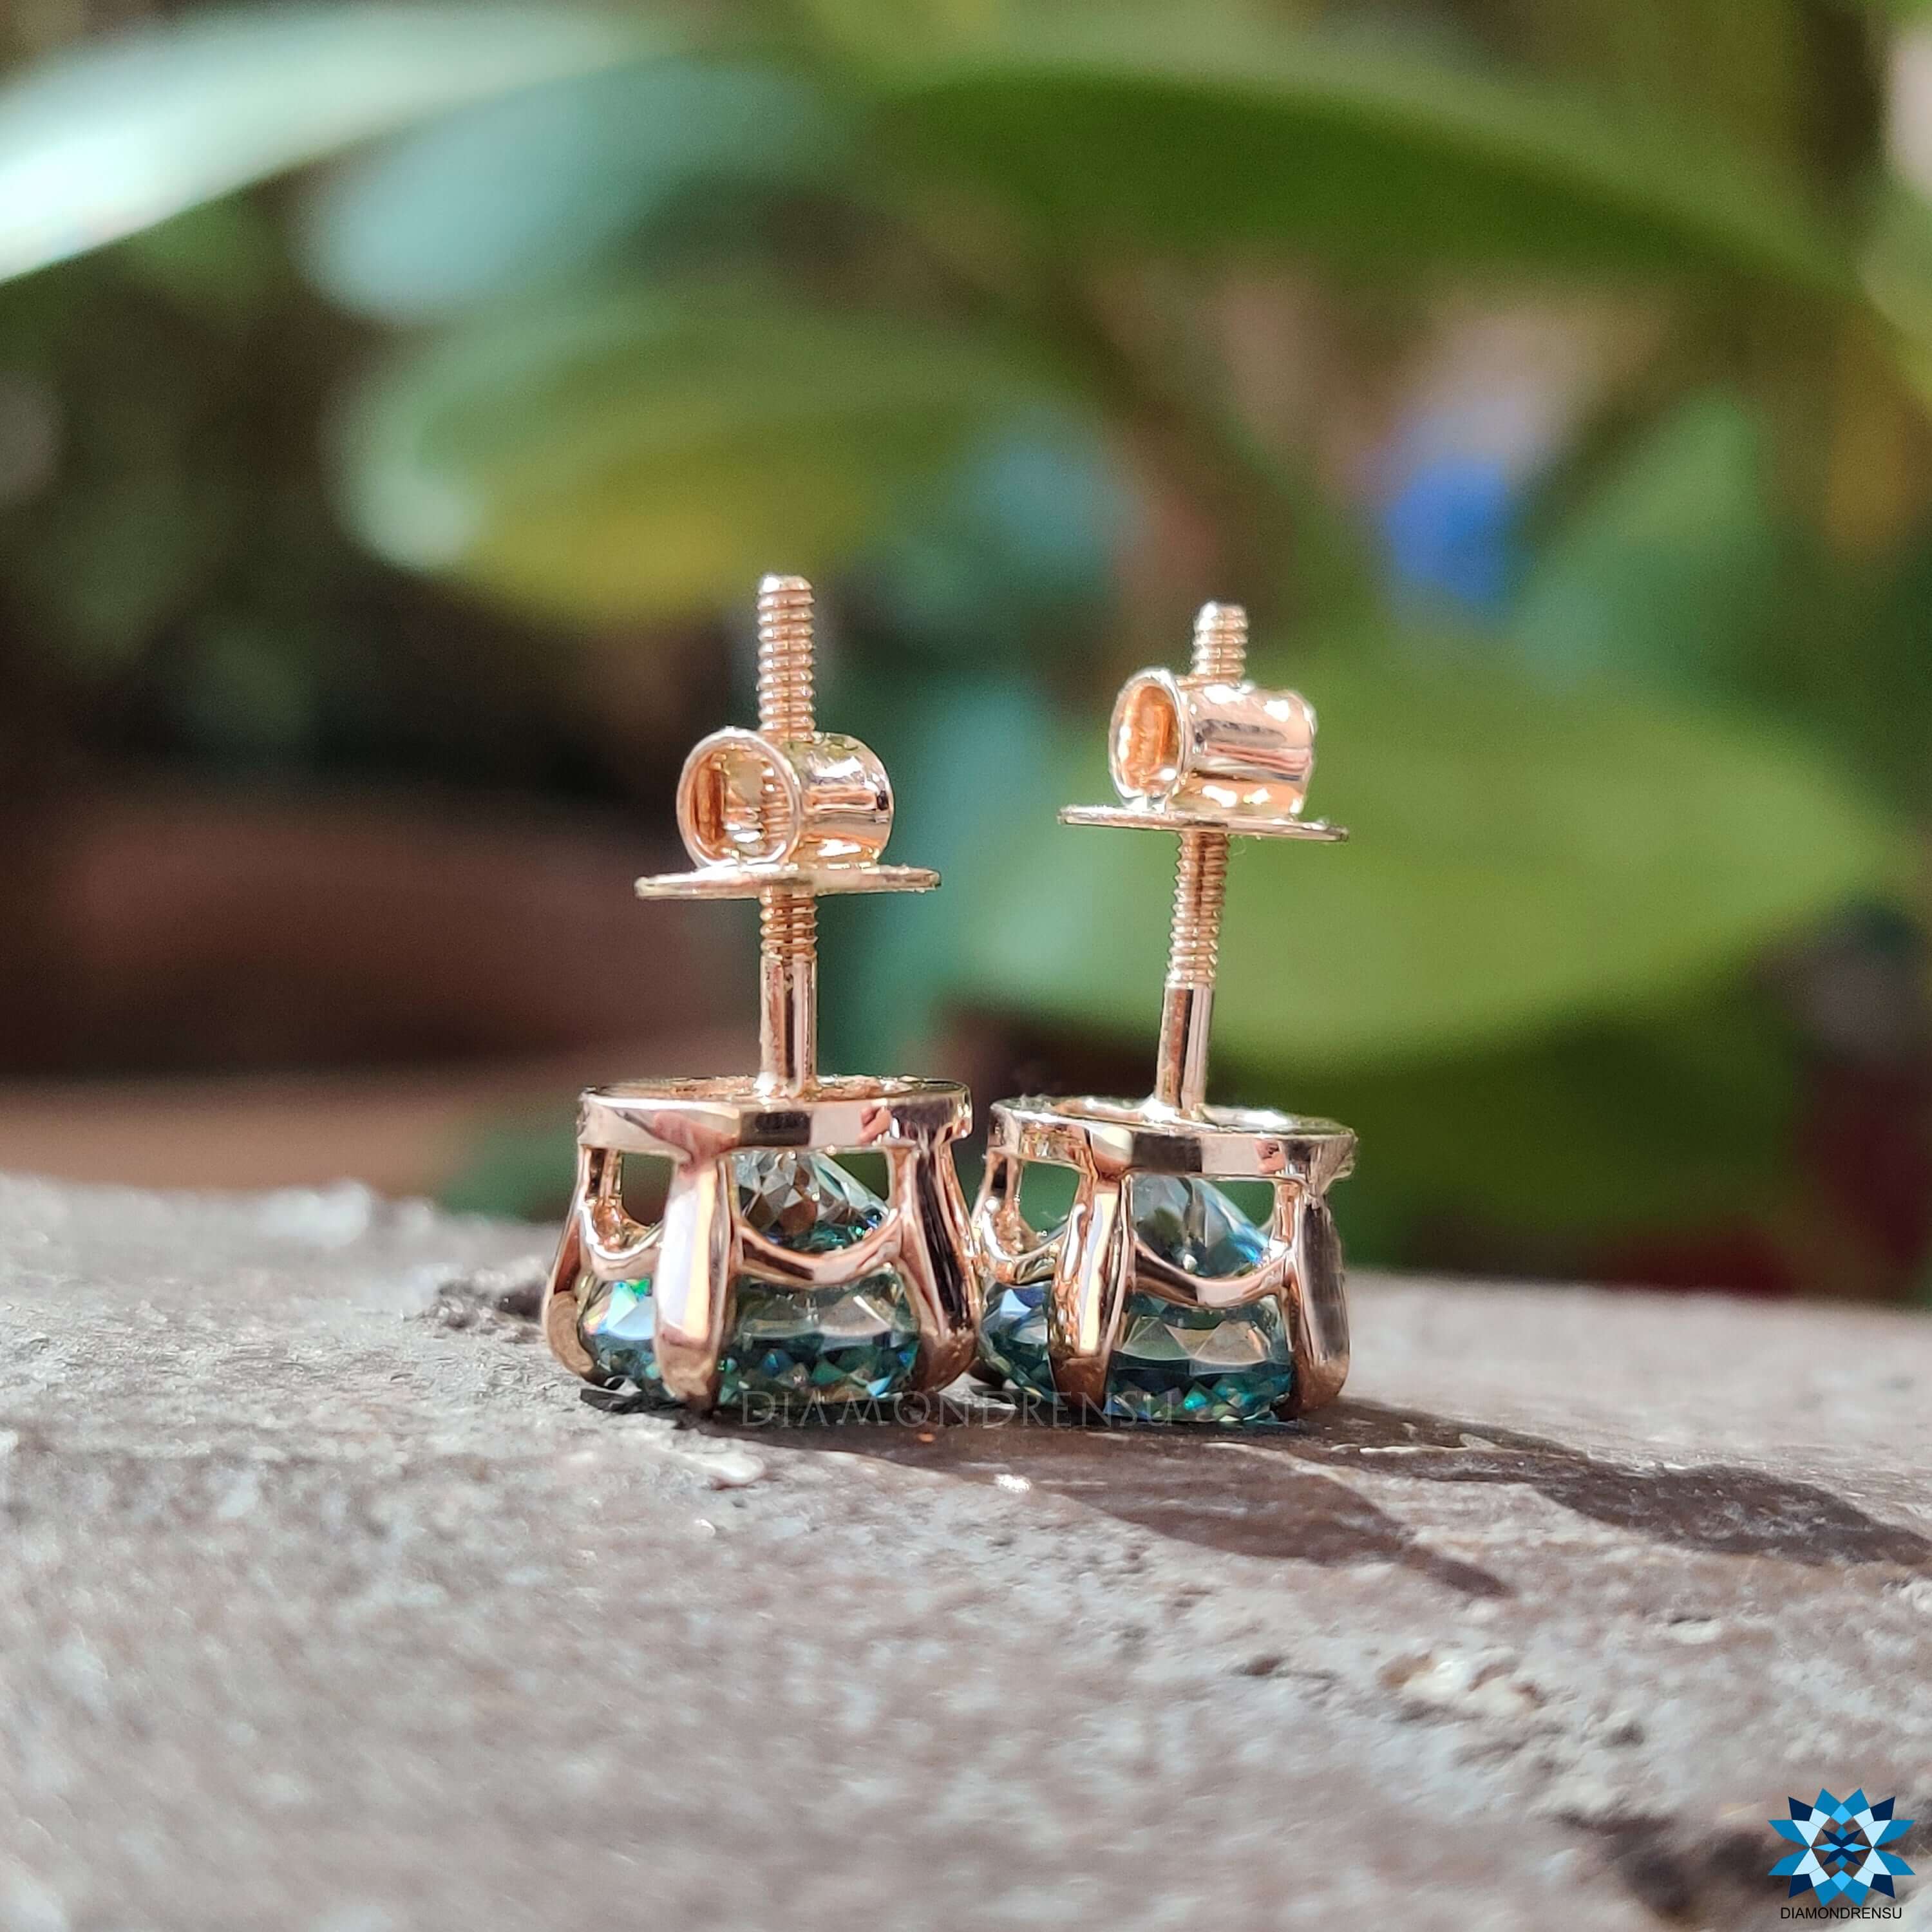 wedding earrings - diamondrensu